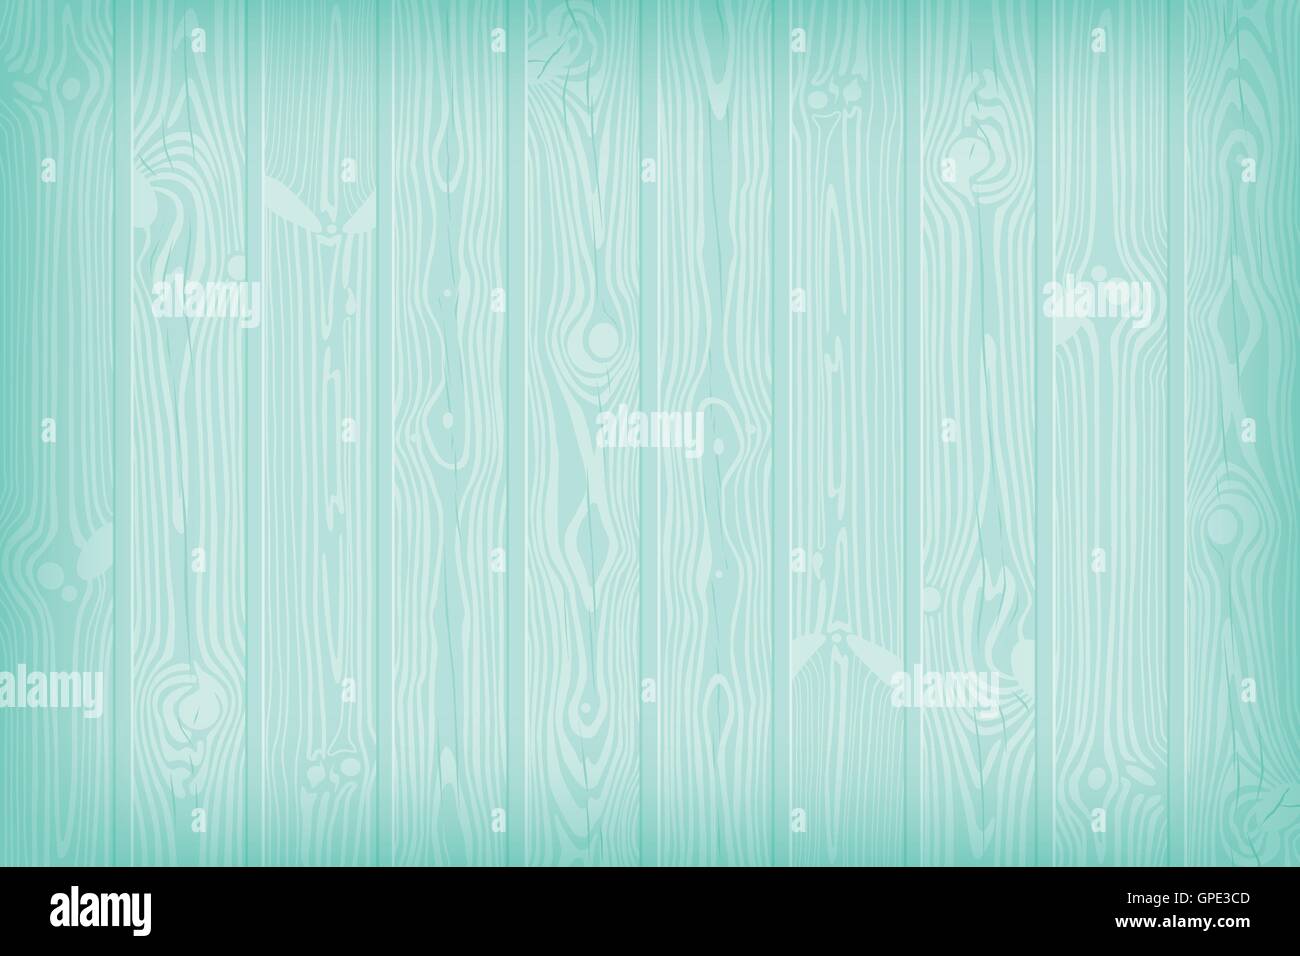 Azul con textura de fondo de madera con nudos y grietas de verano ilustración vectorial Ilustración del Vector